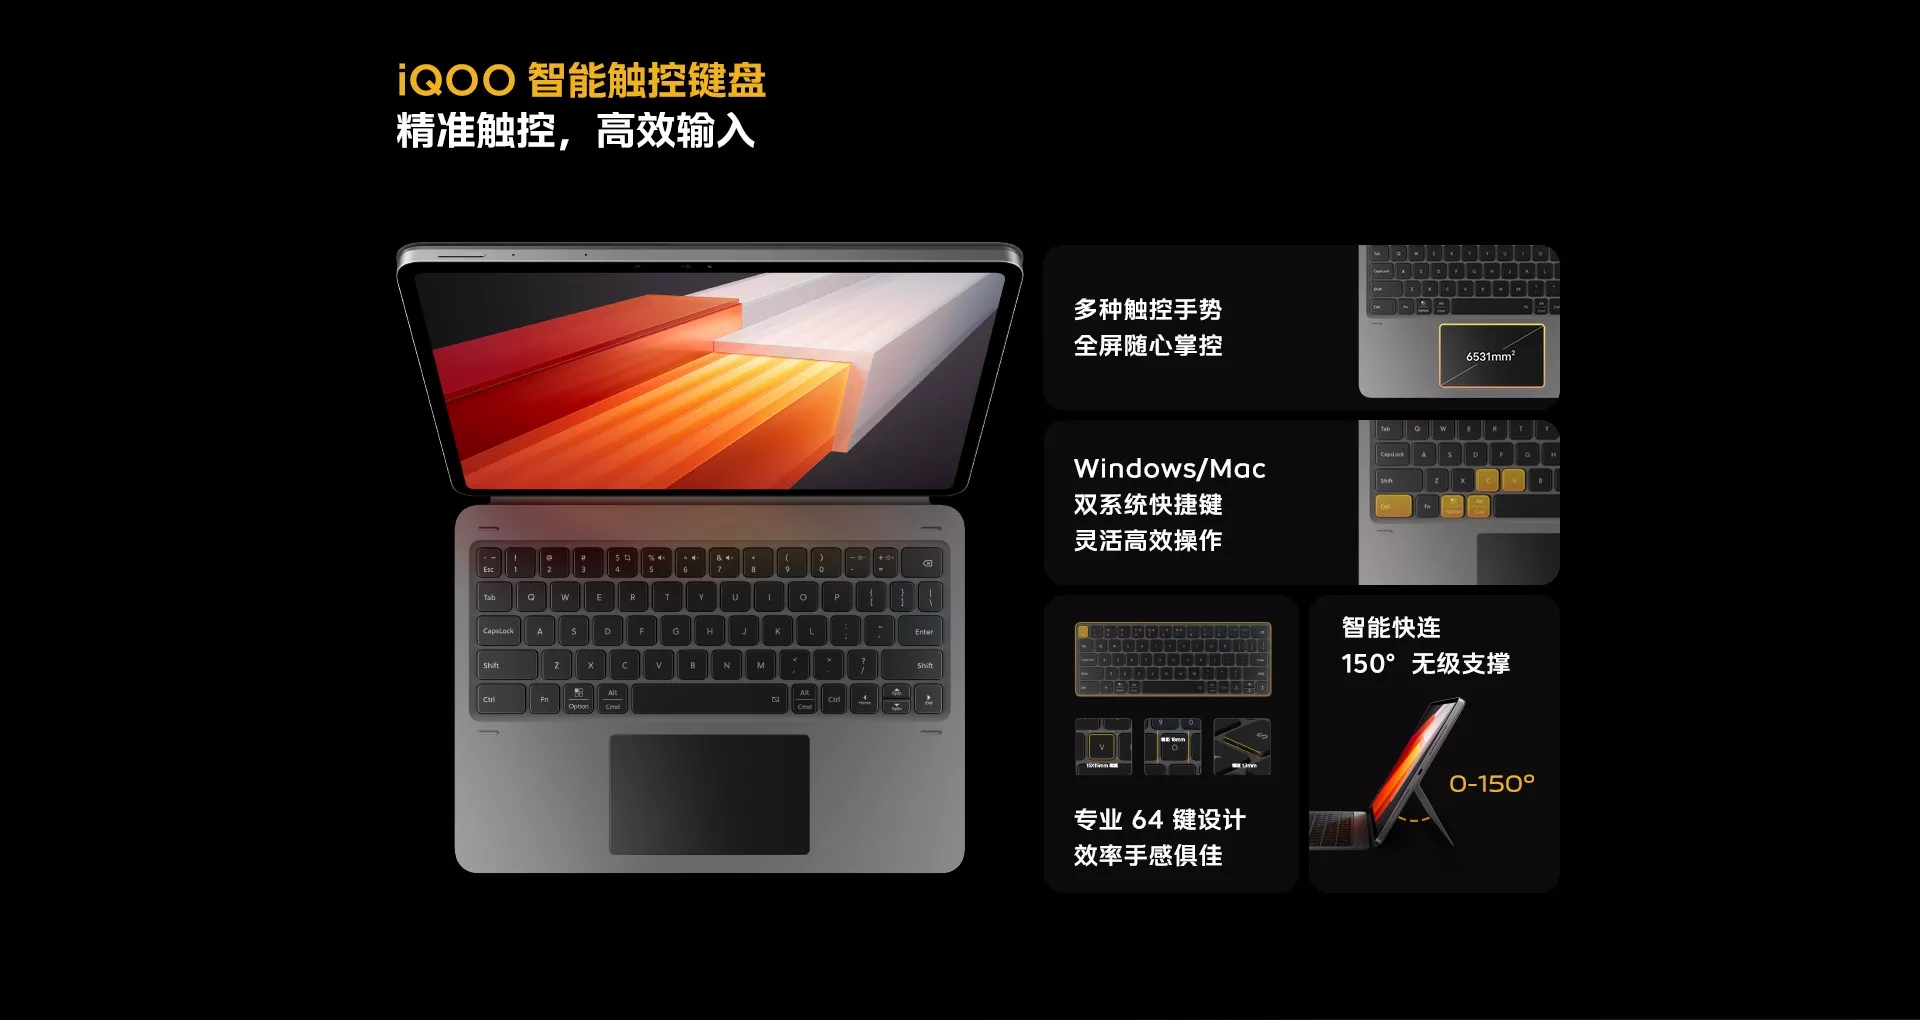 สเปค iQOO Pad แท็บเล็ตตัวแรง จอใหญ่ ใช้ชิป Dimensity 9000+ เปิดตัวที่จีนเริ่มต้นราว 12,700 บาท